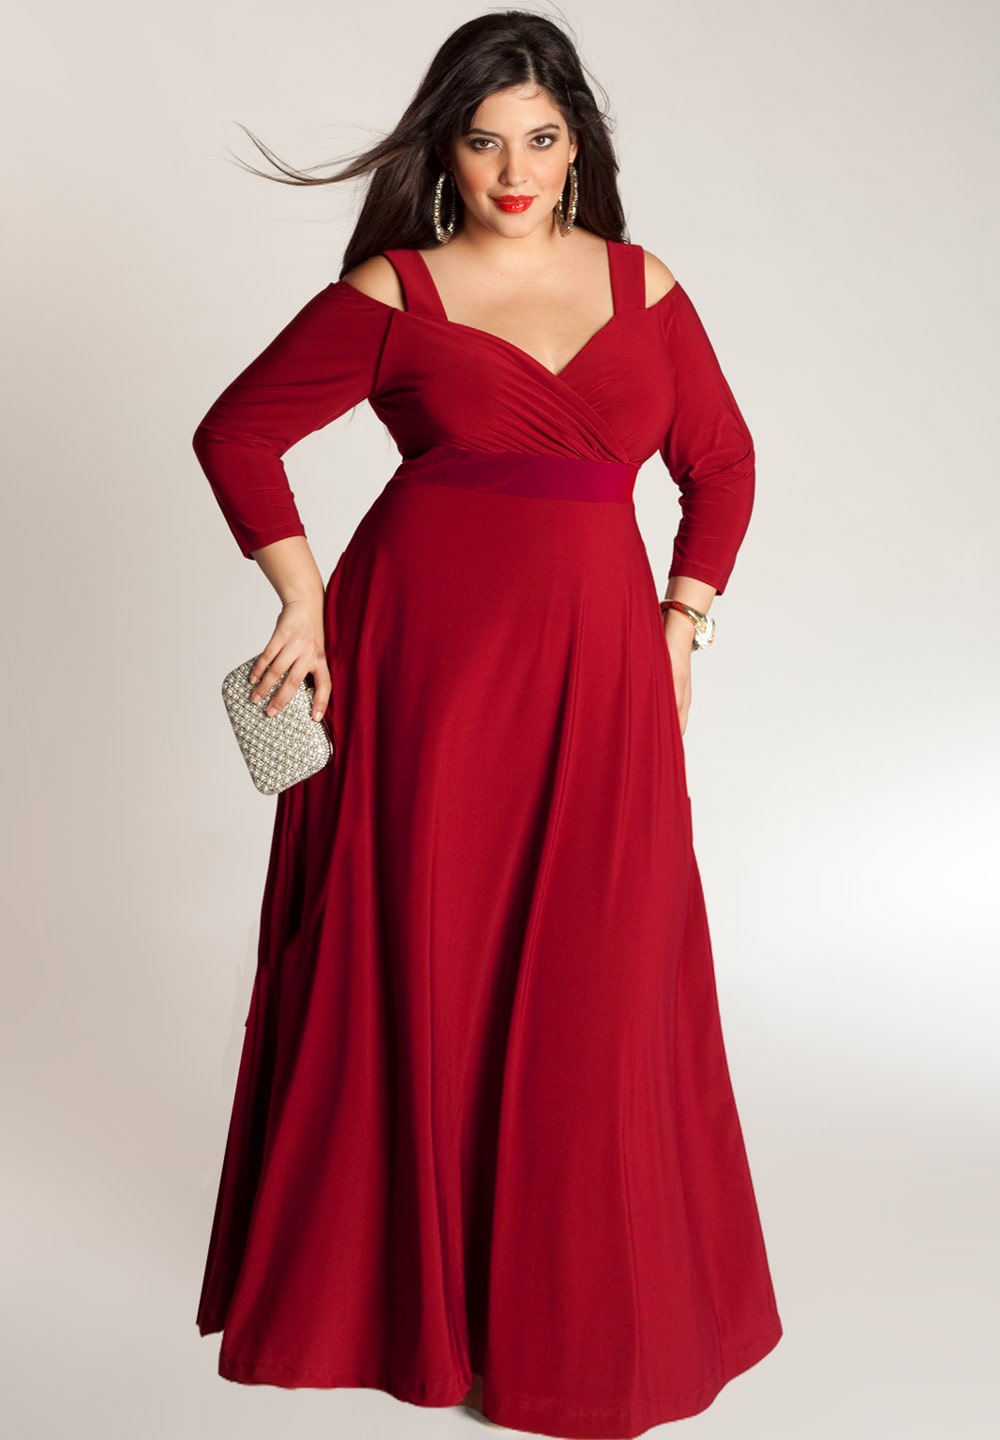 Voluminous Tulle Dress - Dark red - Ladies | H&M US